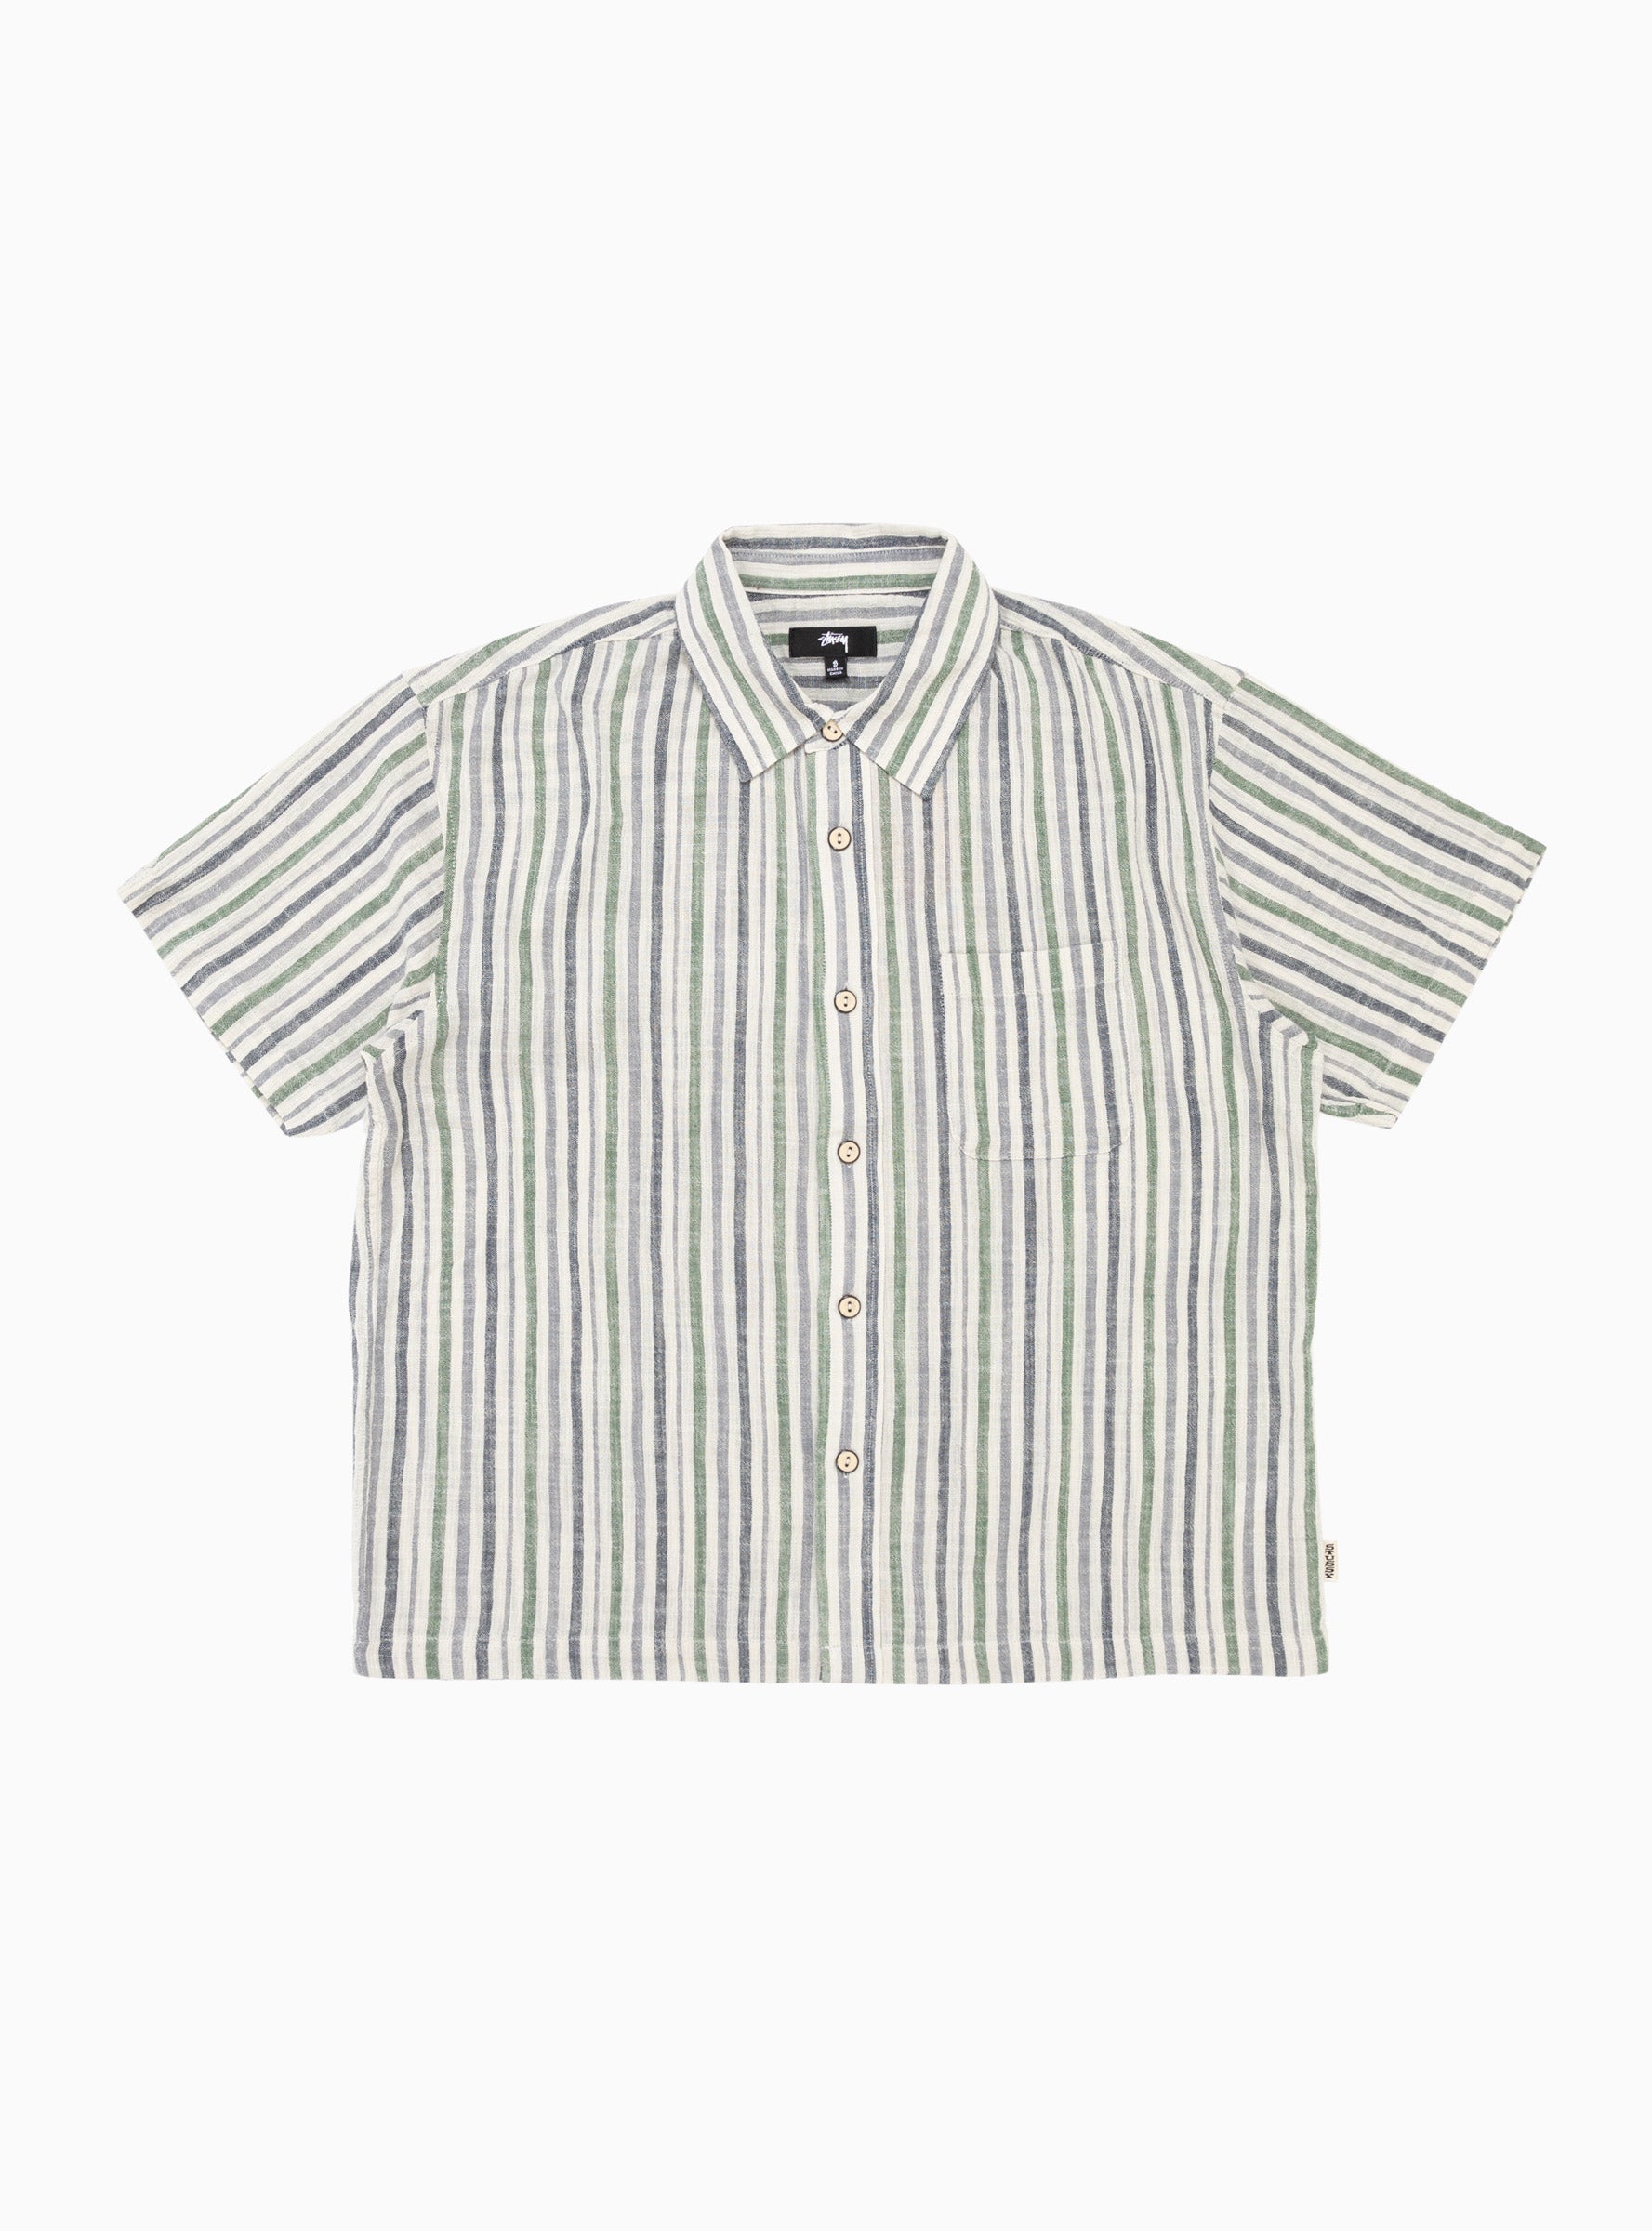 Wrinkly Cotton Gauze Shirt Multi Stripe by Stüssy | Couverture & The